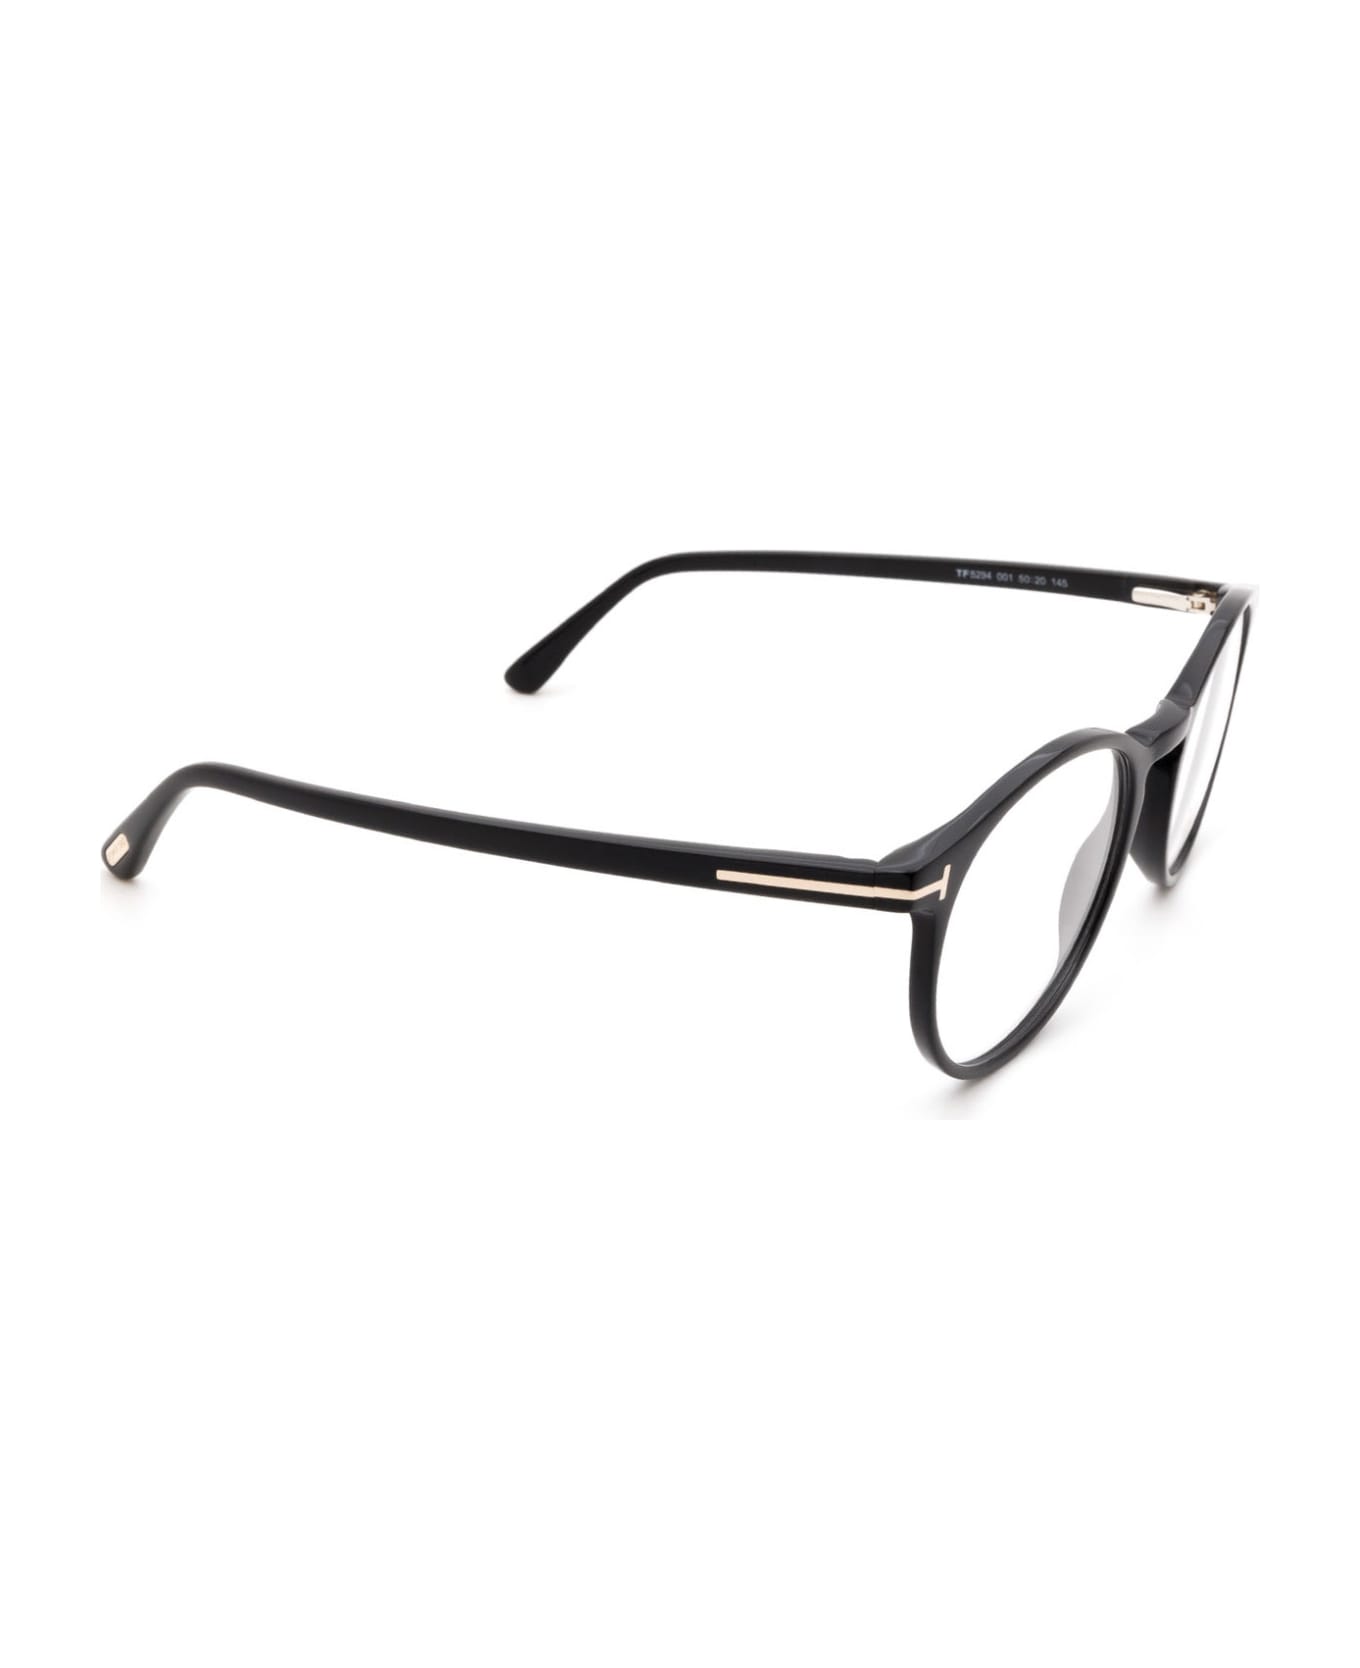 Tom Ford Eyewear Ft5294 Shiny Black Glasses - Shiny Black